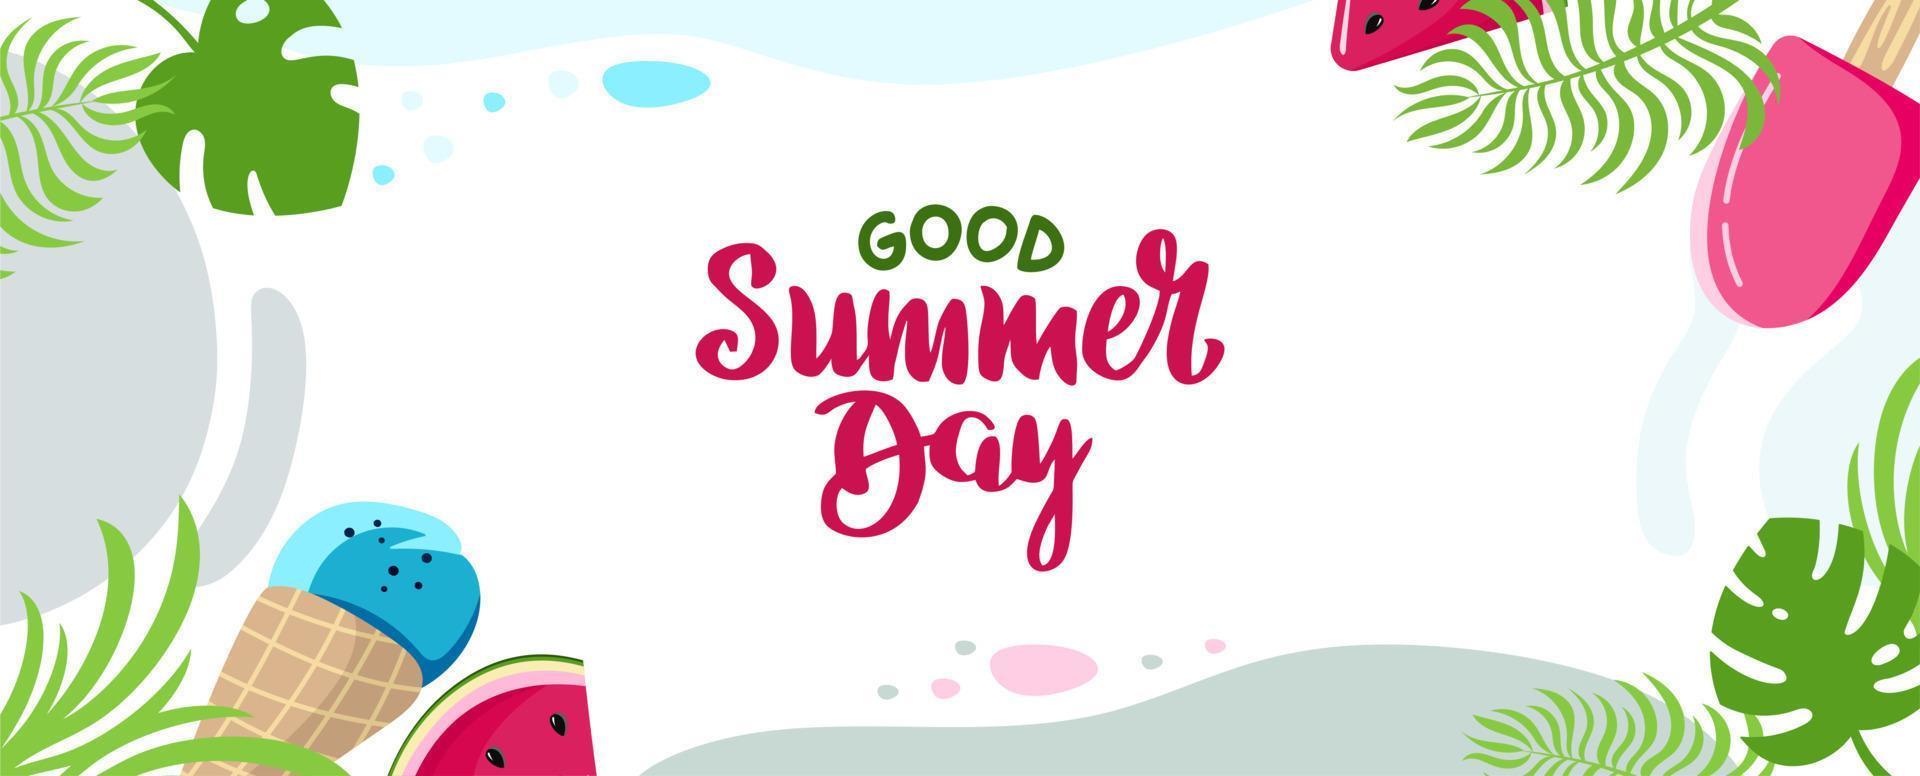 estate sfondo iscrizione buona giornata estiva sito web cap vacanza concetto colorato cartolina orizzontale illustrazione vettoriale in stile piatto